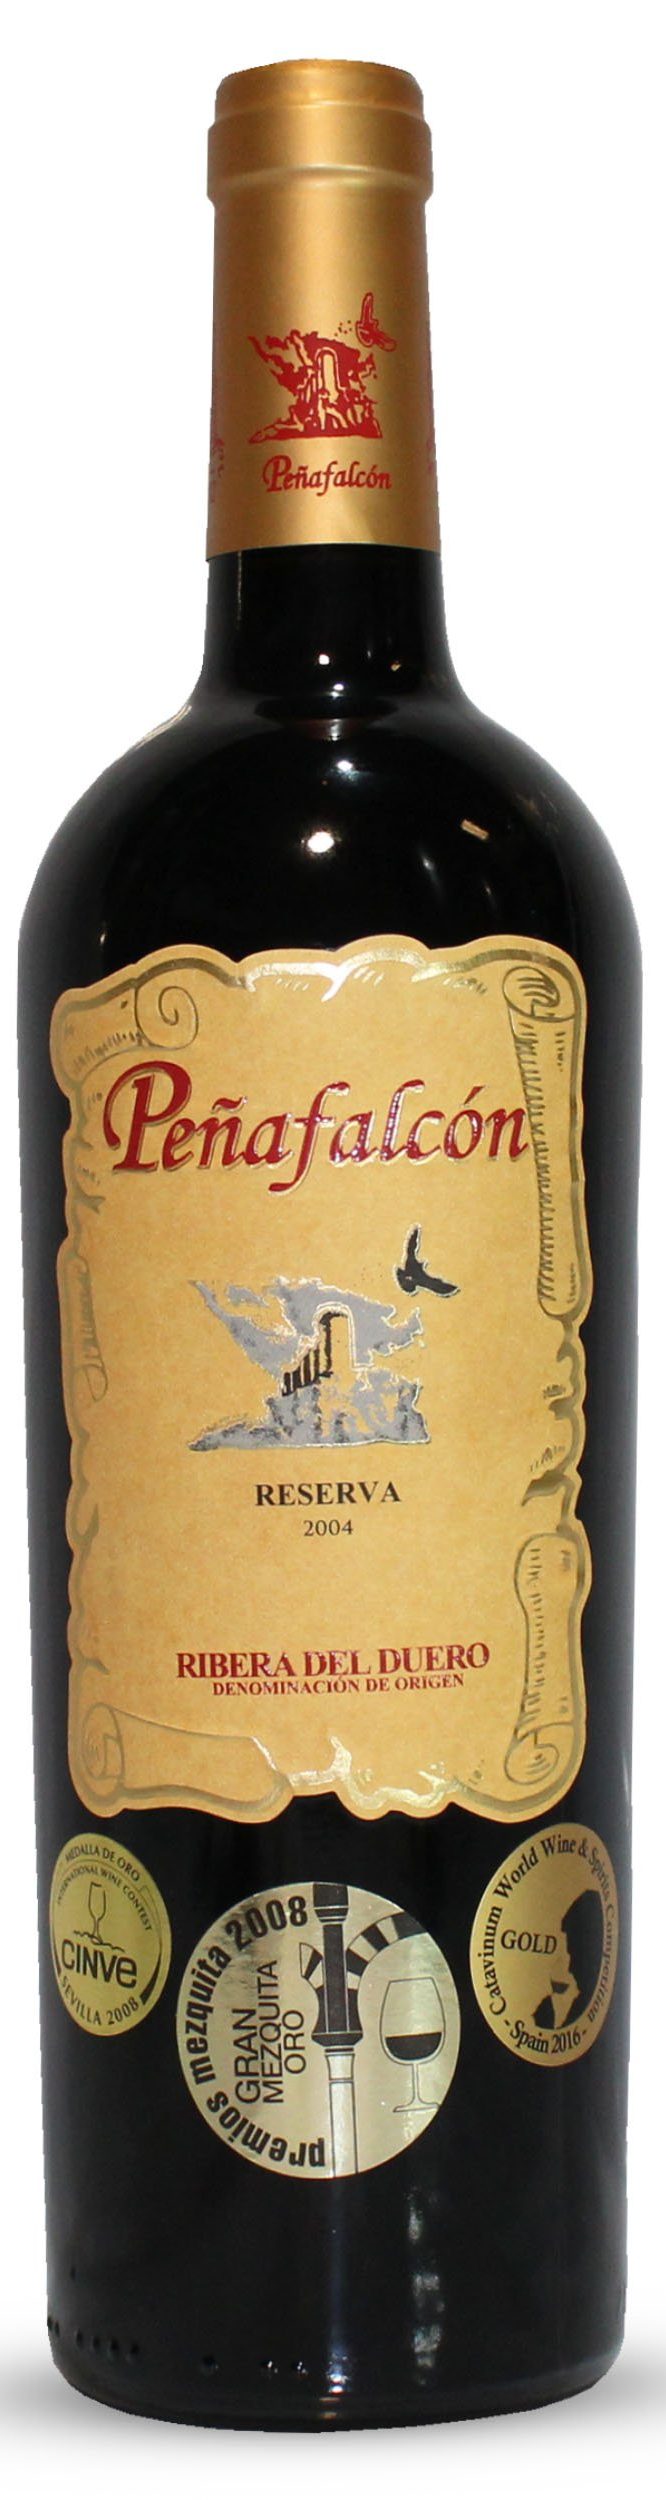 Vinos, Wines, BODEGAS PEÑAFALCON SL